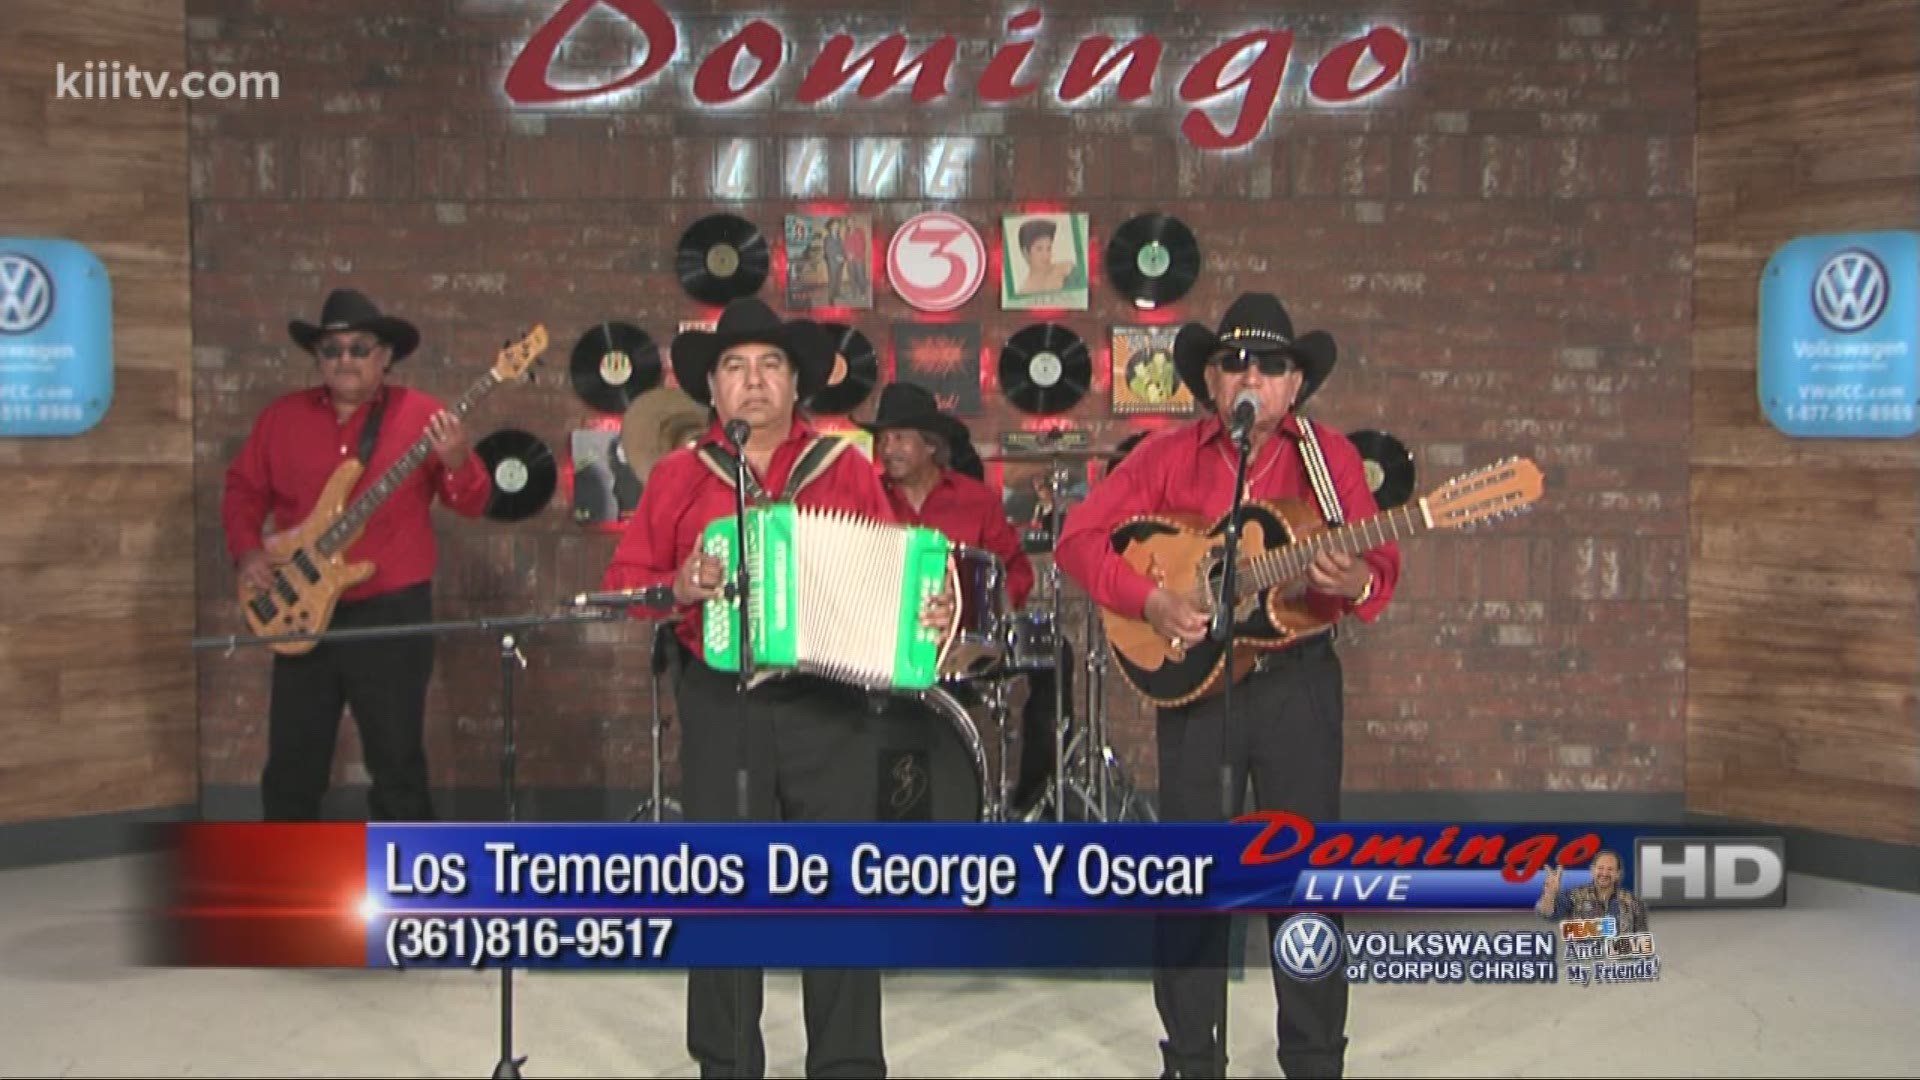 Los Tremendos De George Y Oscar performing "Para Que Me Haces Llorar" on Domingo Live.